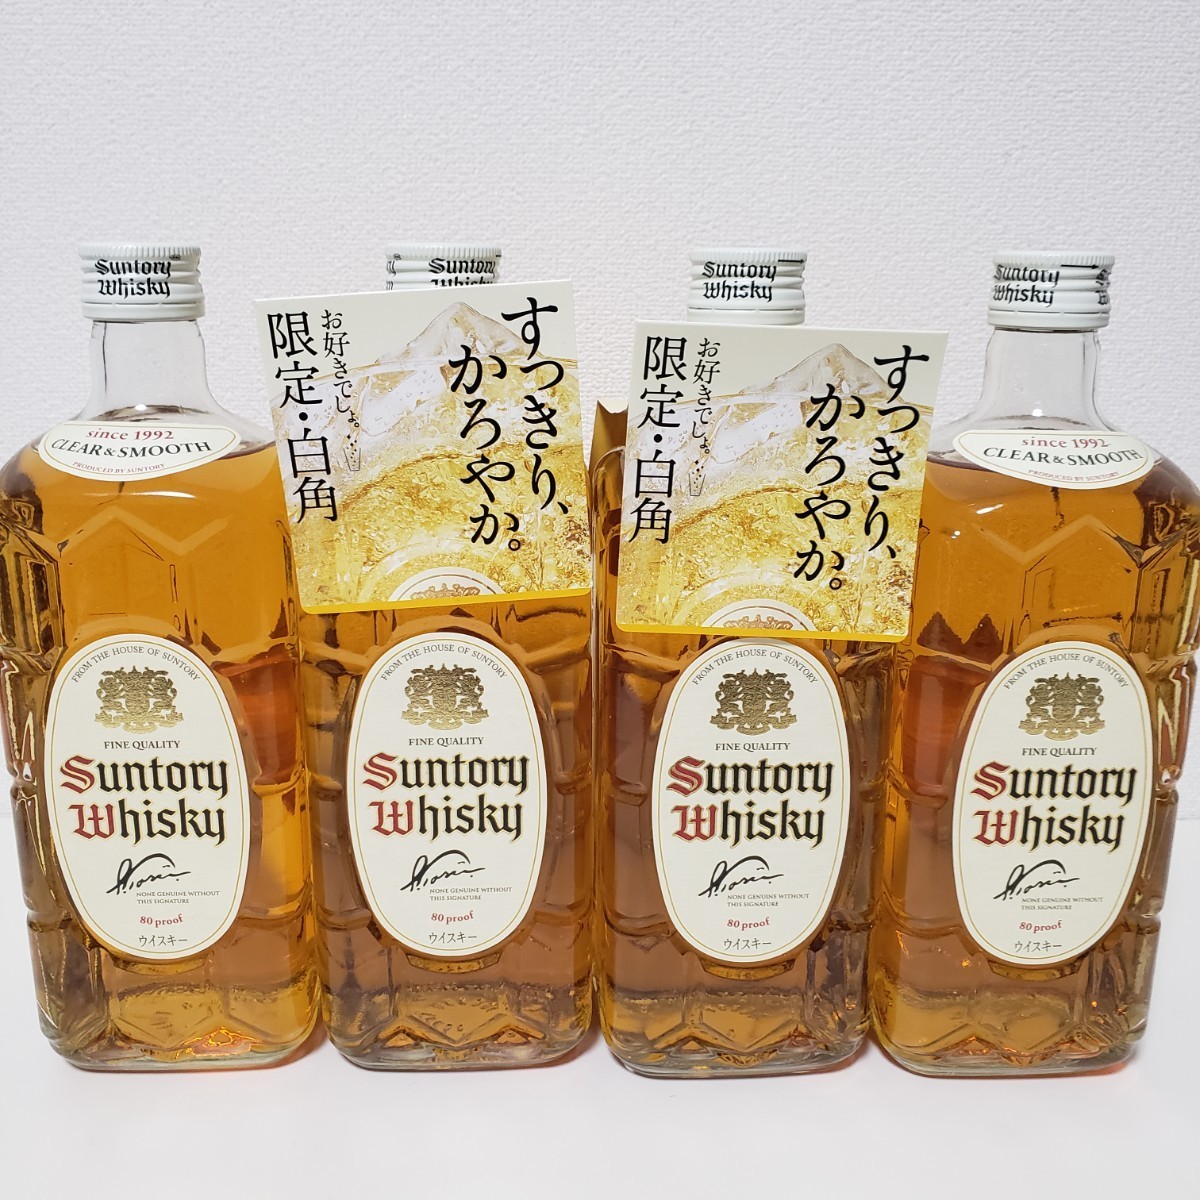 サントリー ウイスキー 角瓶 日本 2700ml 8本セット 新品未開封品 ウイスキー 定番の中古商品